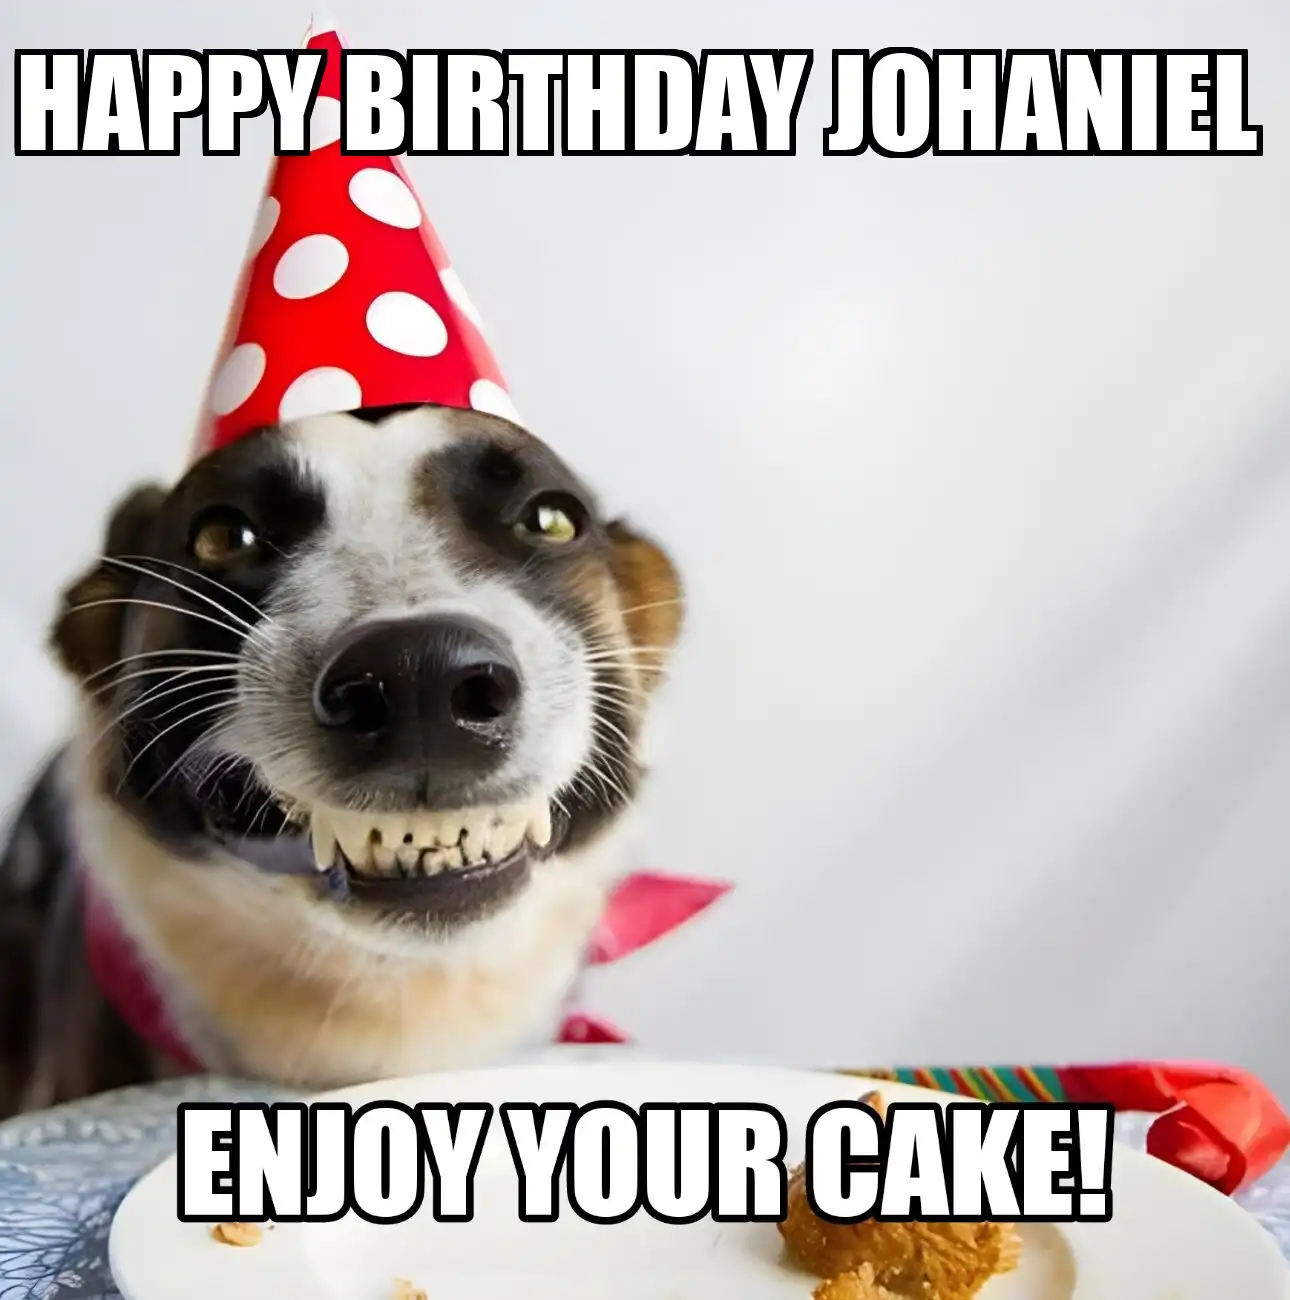 Happy Birthday Johaniel Enjoy Your Cake Dog Meme